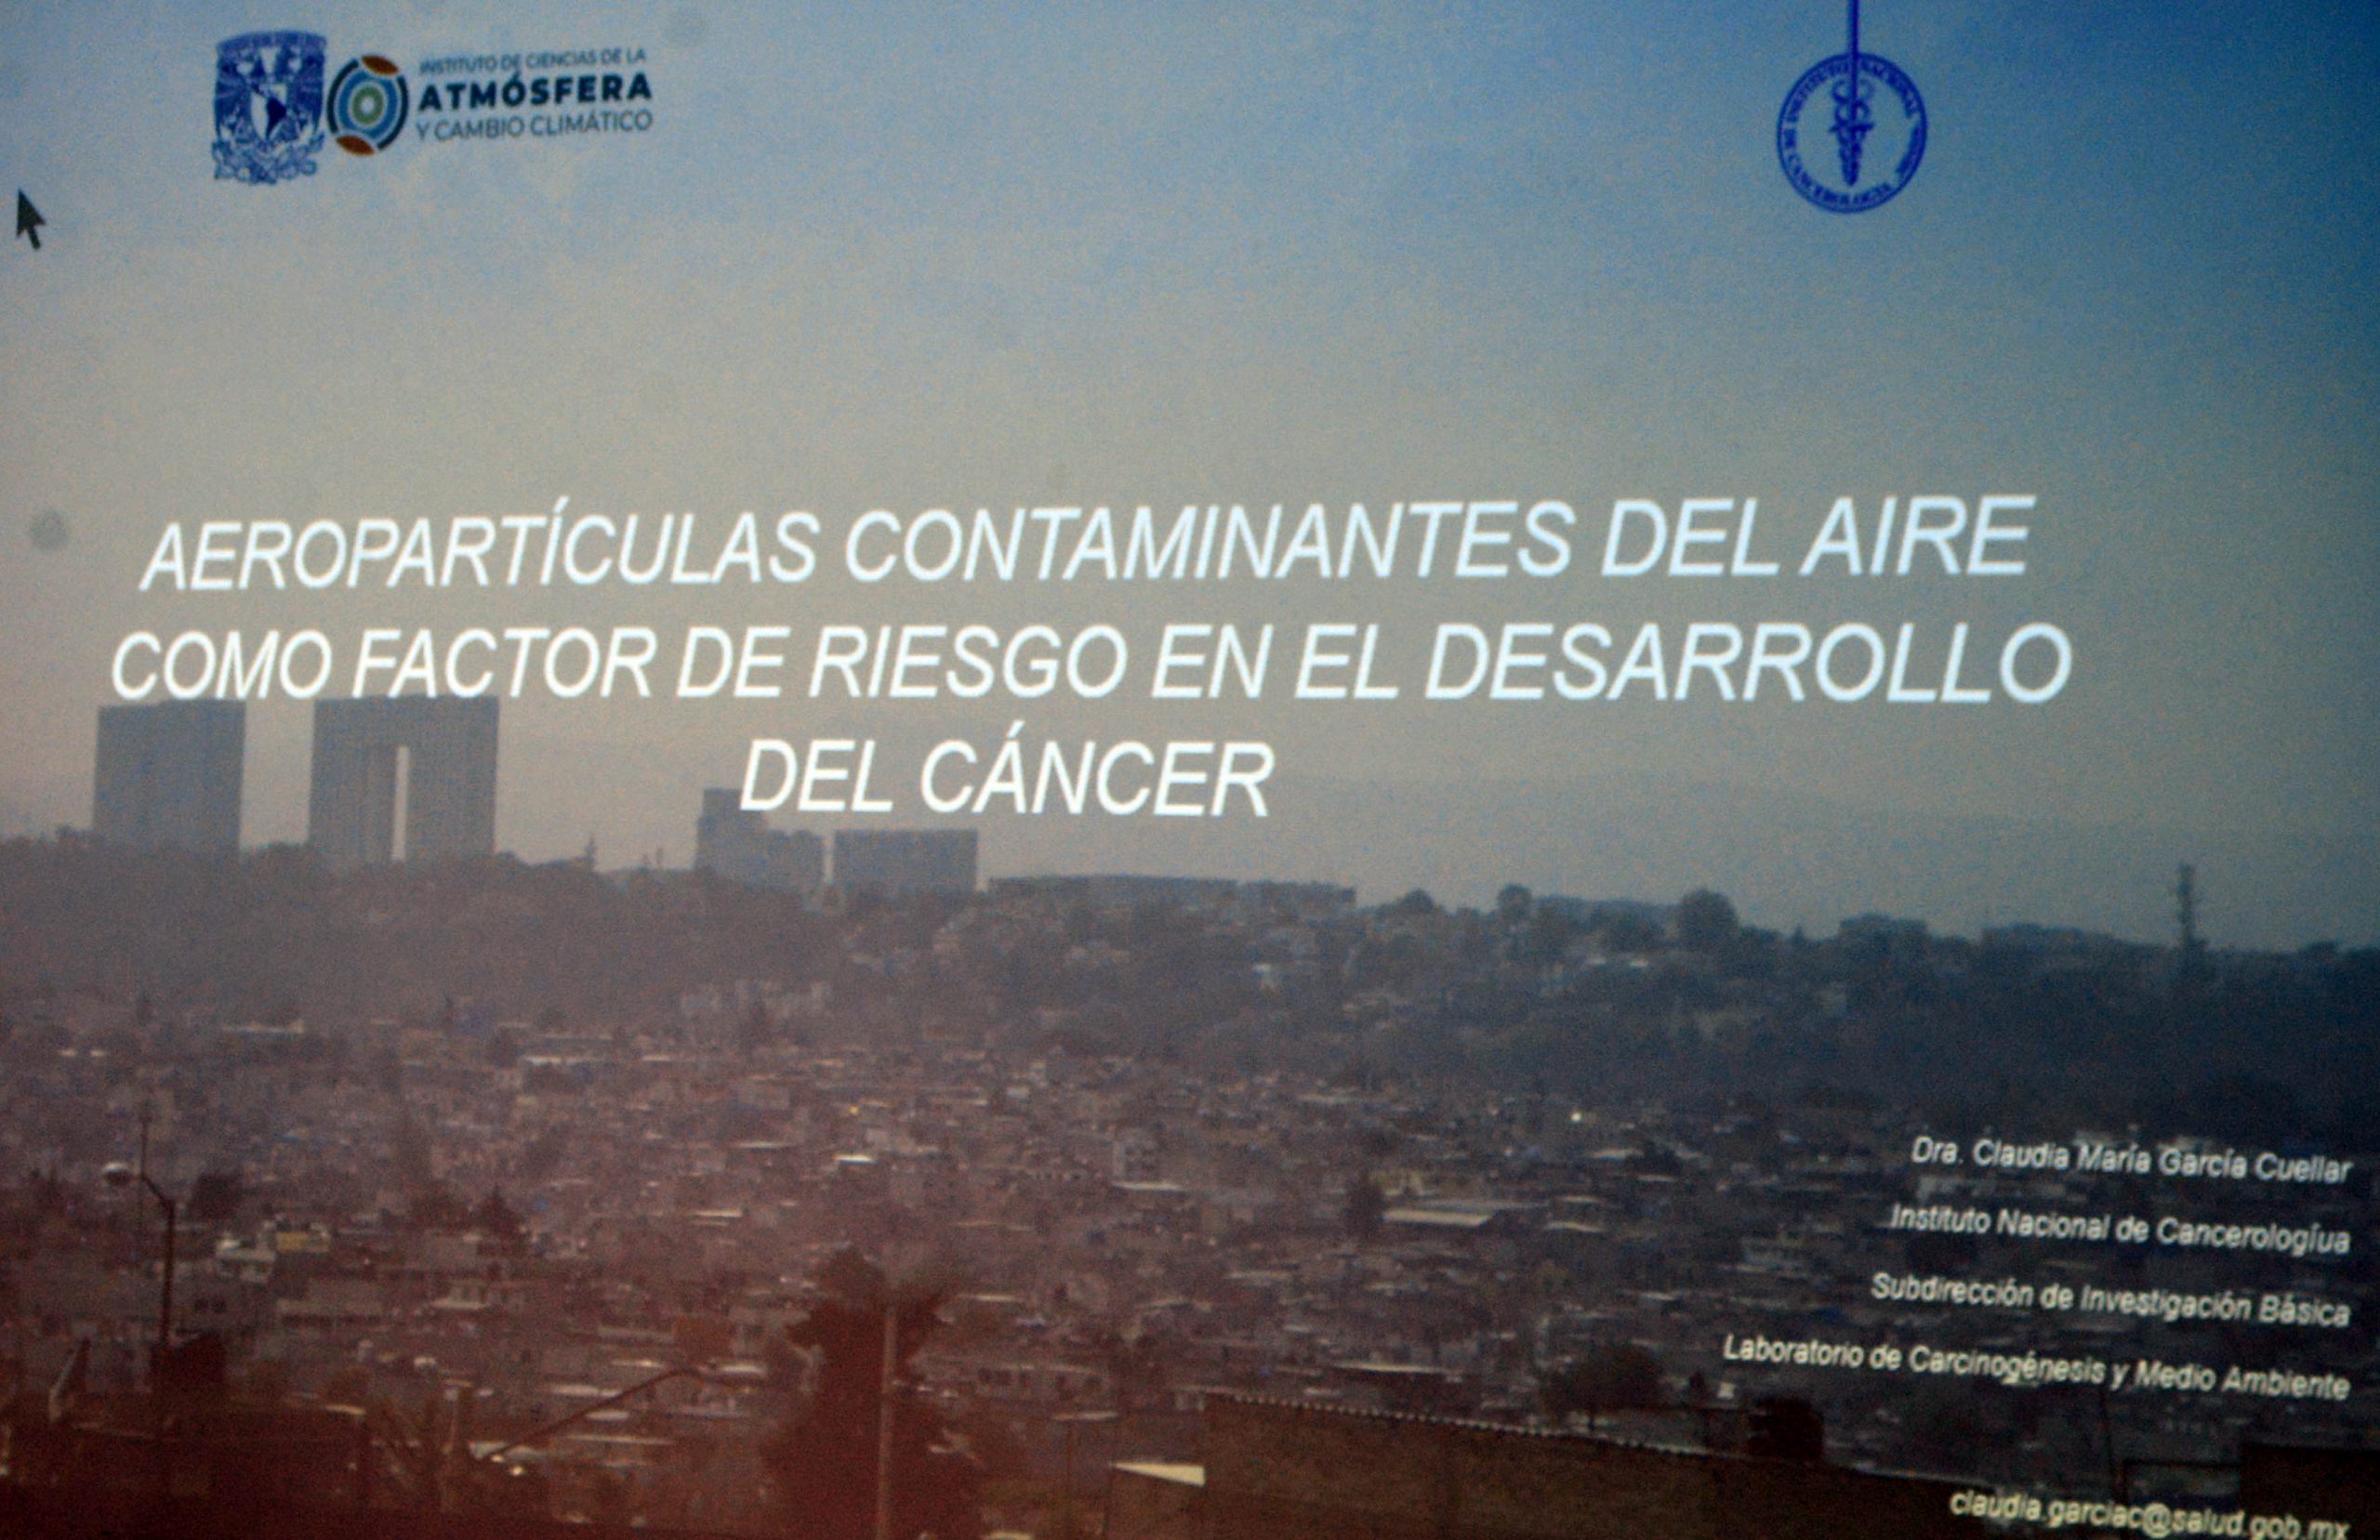 La contaminación del aire es factor de riesgo importante para el desarrollo de cáncer